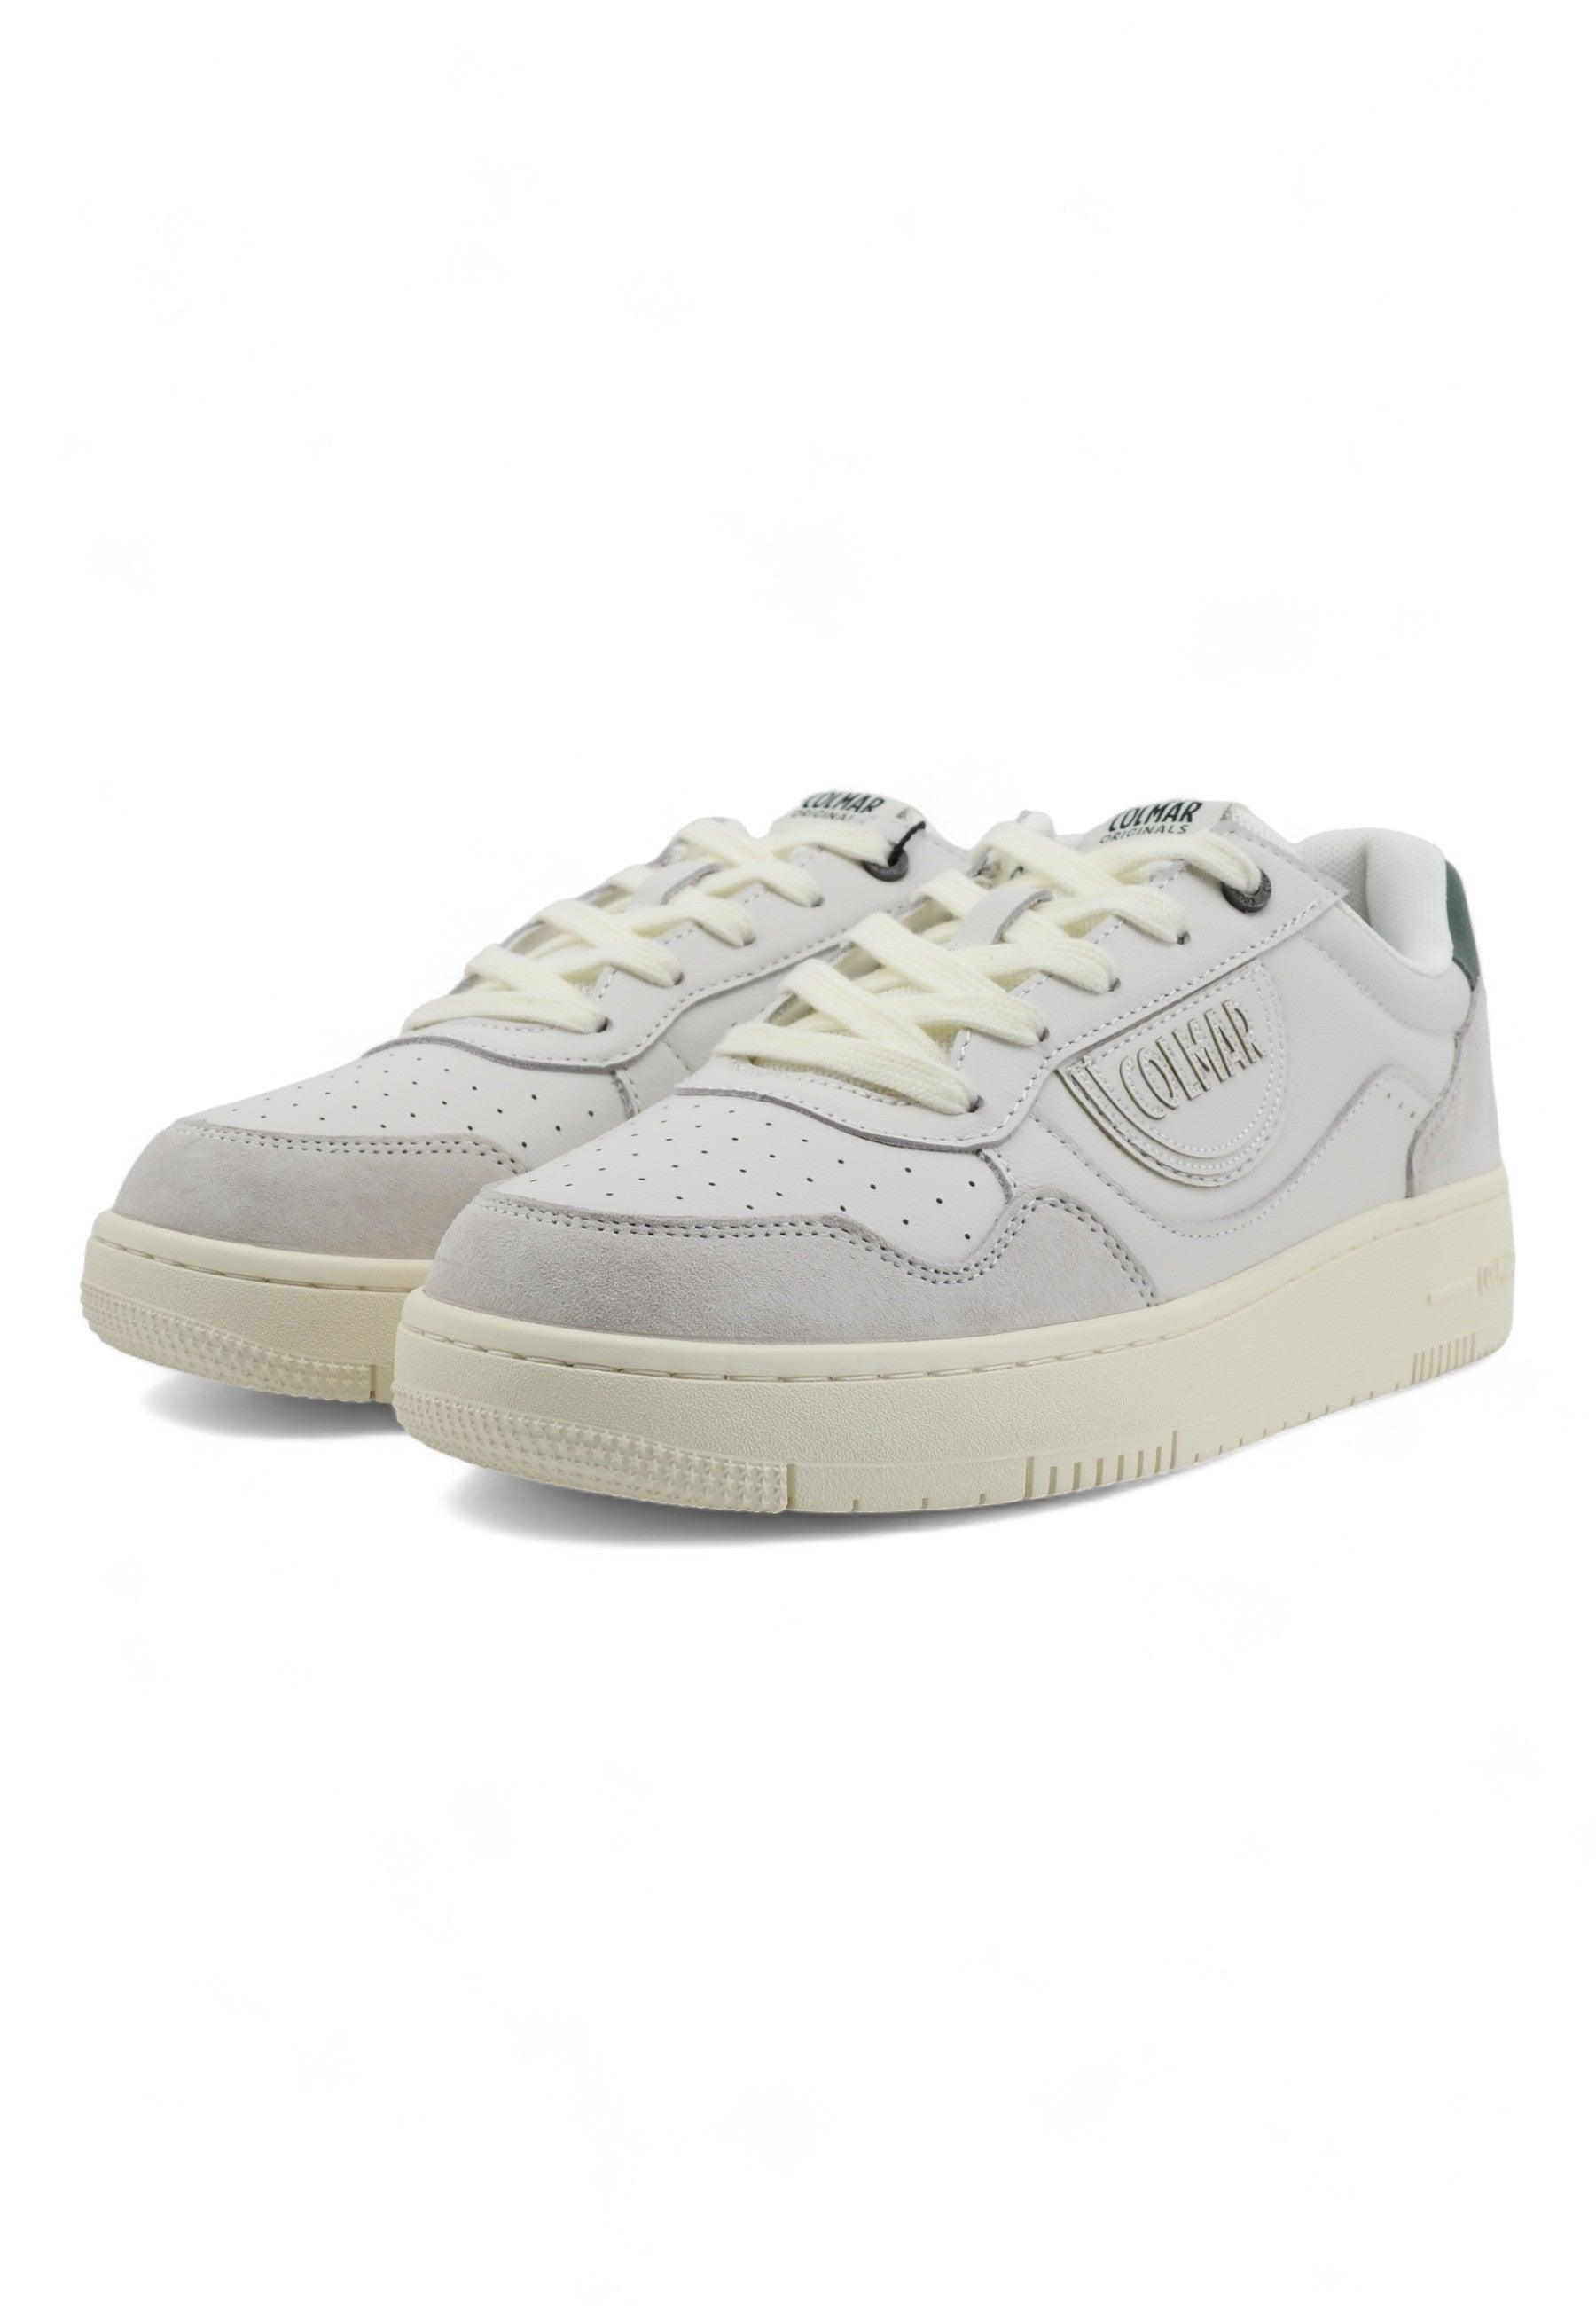 COLMAR Sneaker Uomo White Sage Green AUSTIN LOOK - Sandrini Calzature e Abbigliamento